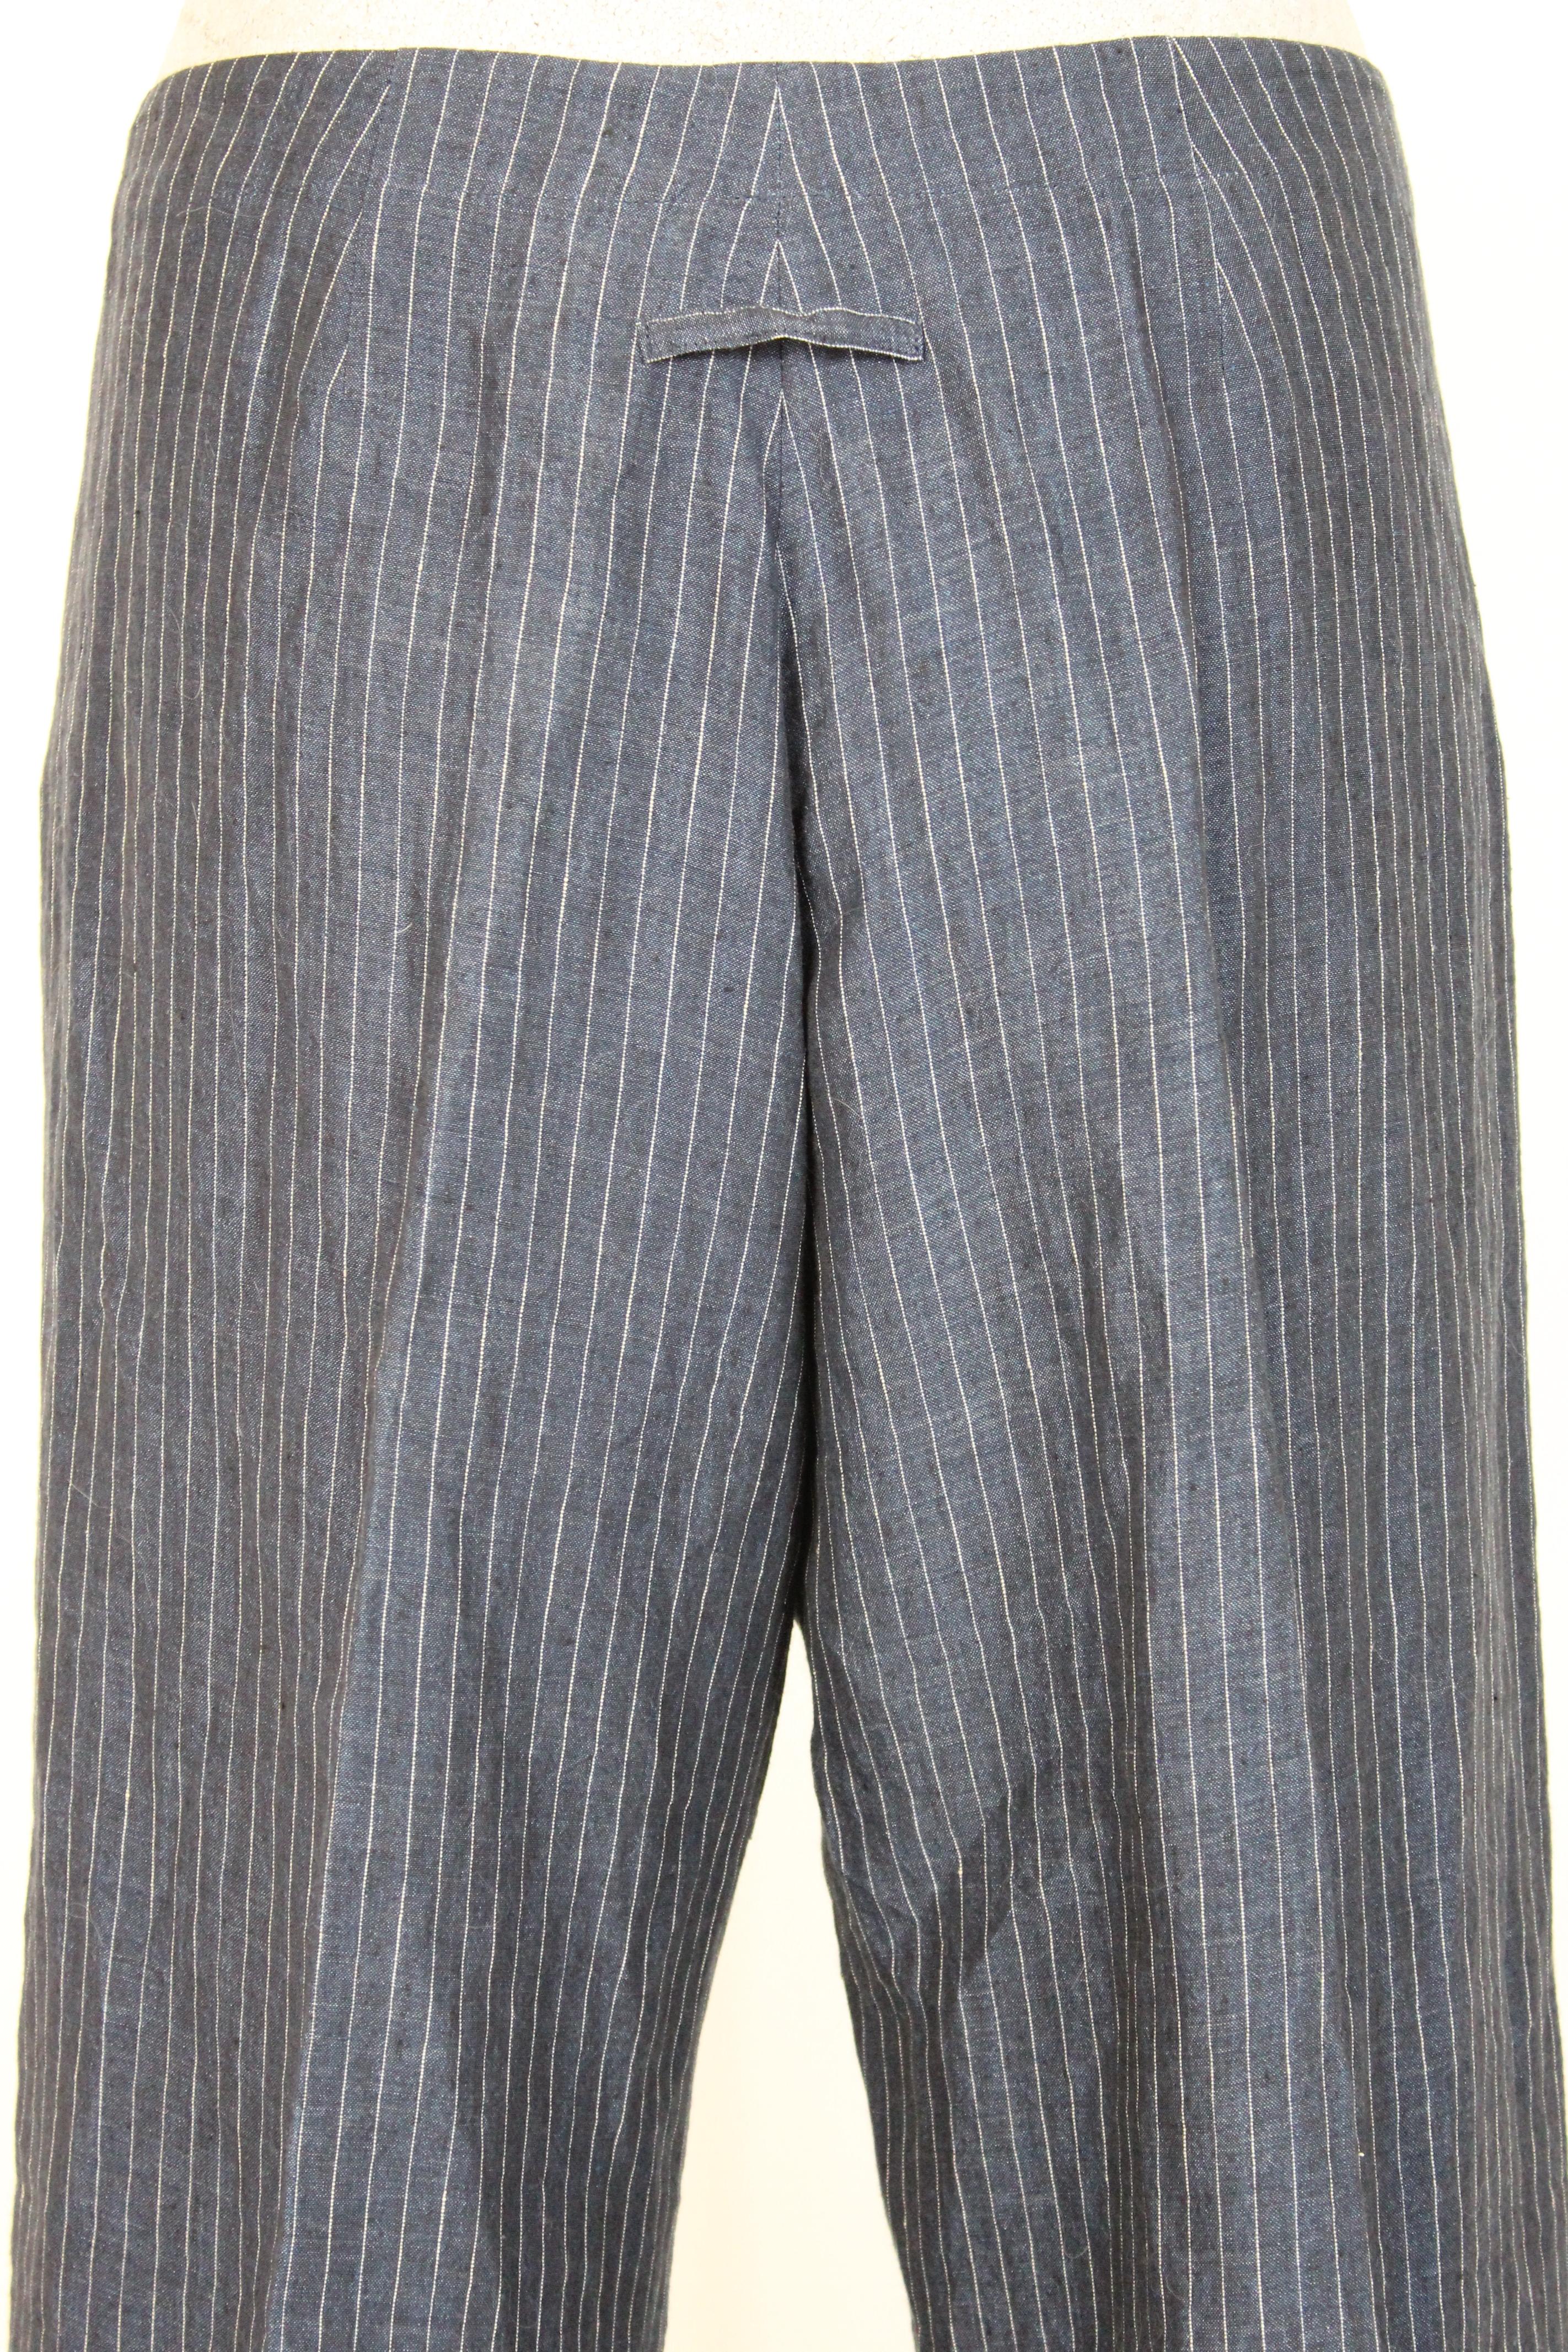 Jean Paul Gaultier Blue Gray Linen Striped Trousers 3